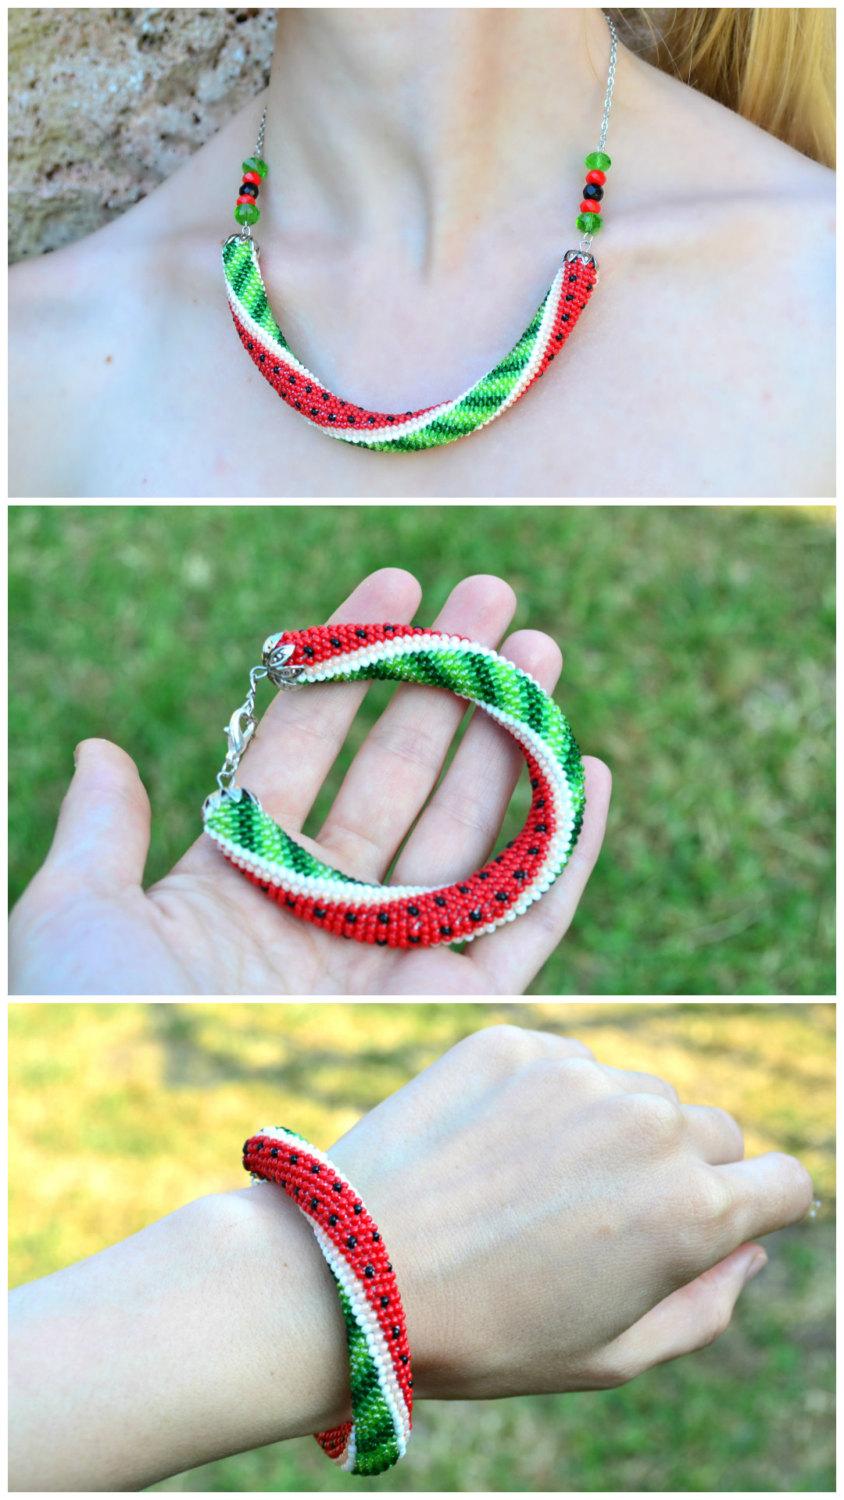 زفاف - 10% OFF Watermelon bracelet necklace jewelry. Berry jewelry bracelet necklace. Green red summer berry bead crochet rope bracelet jewelry.